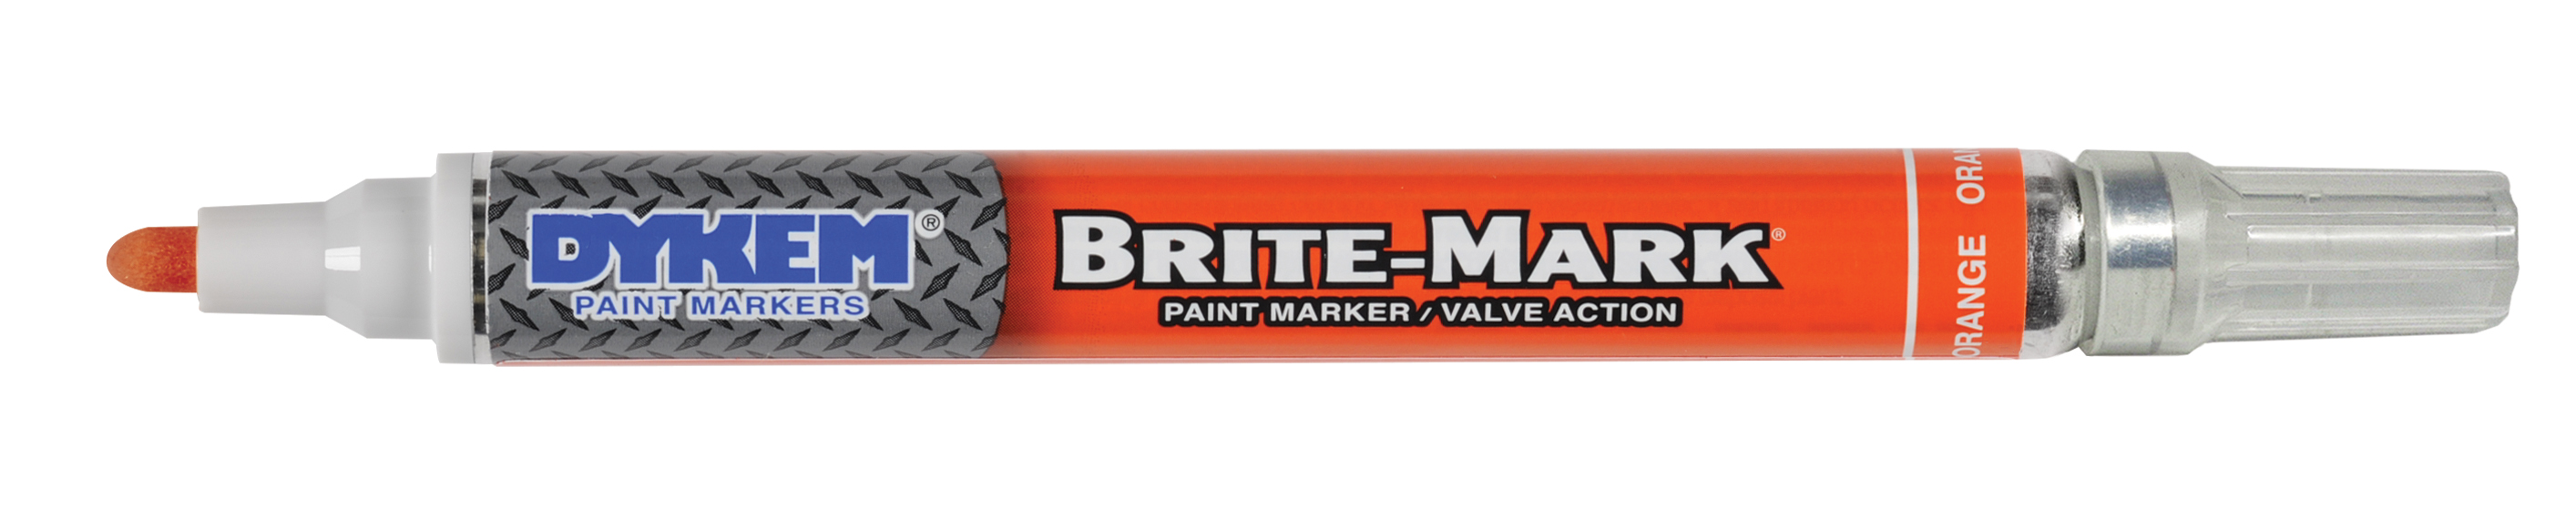 DYKEM - 84006 - Permanent Paint Marker, Red, Medium Tip, BRITE